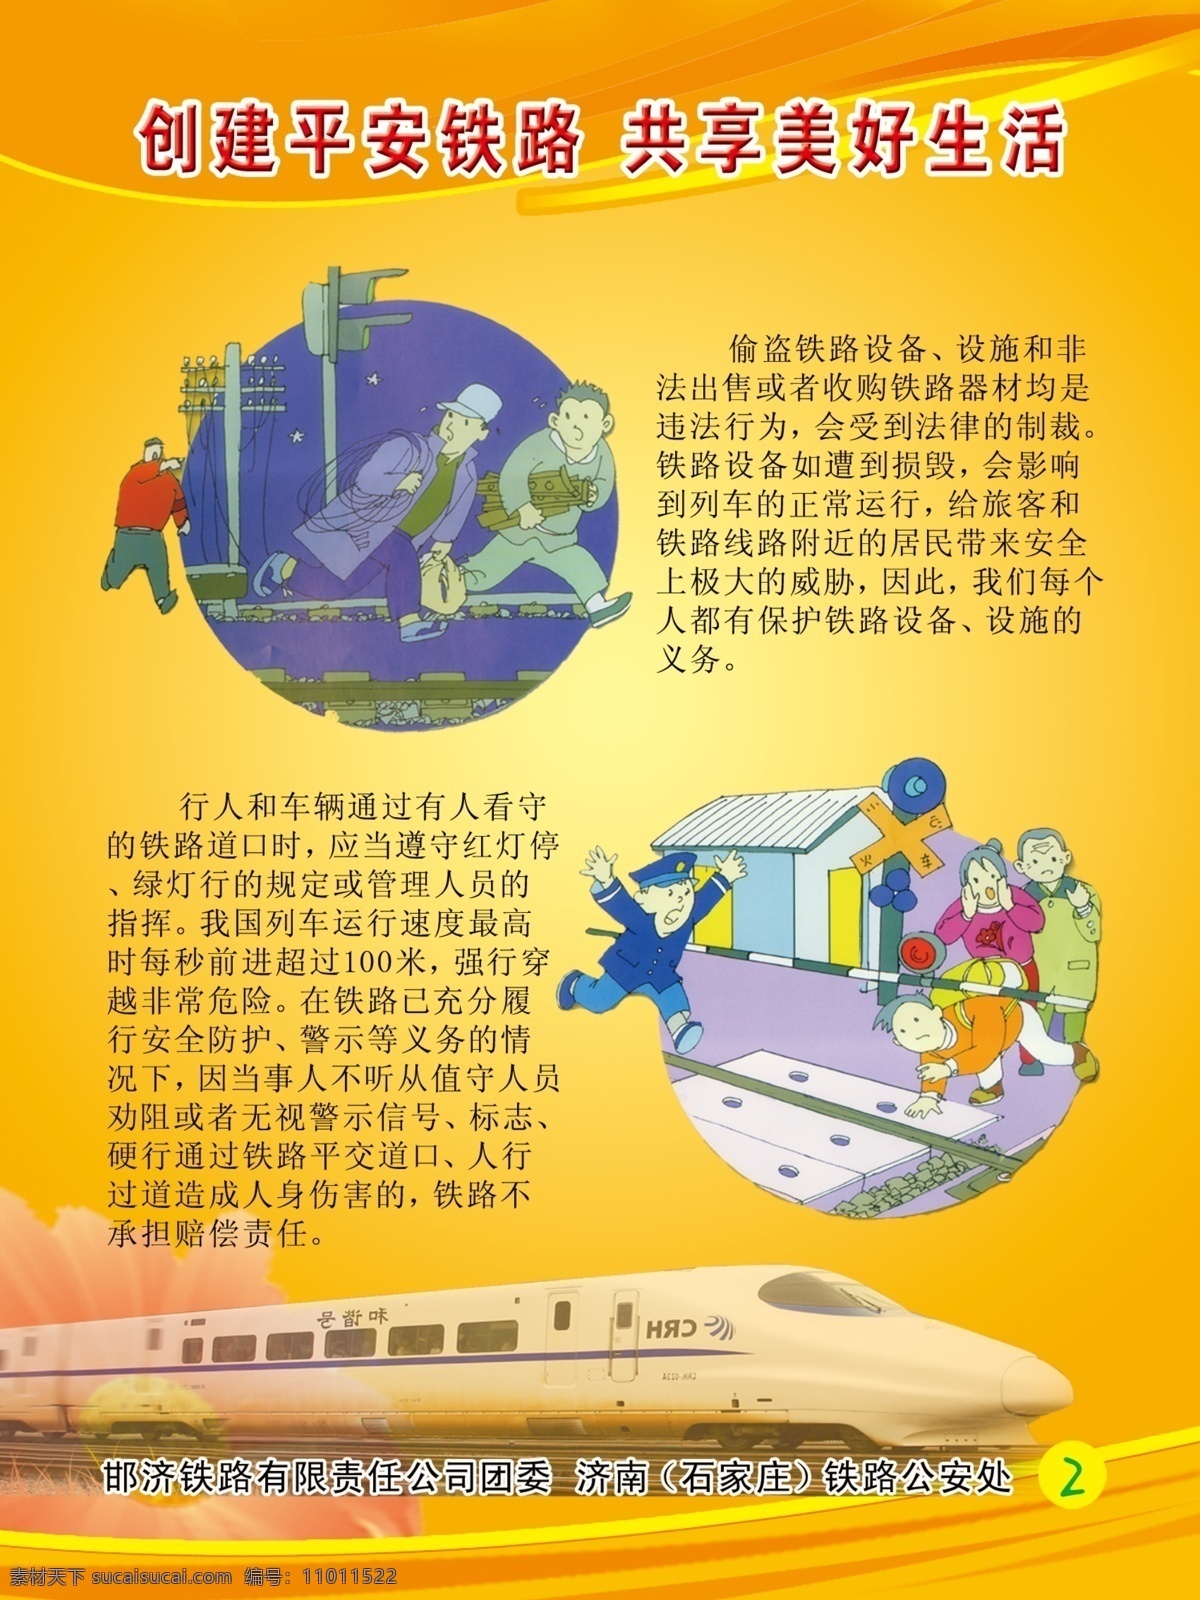 平安铁路 创建平安铁路 共建美好生活 图画 黄色 中国铁路 海报 系列 火车 广告设计模板 源文件